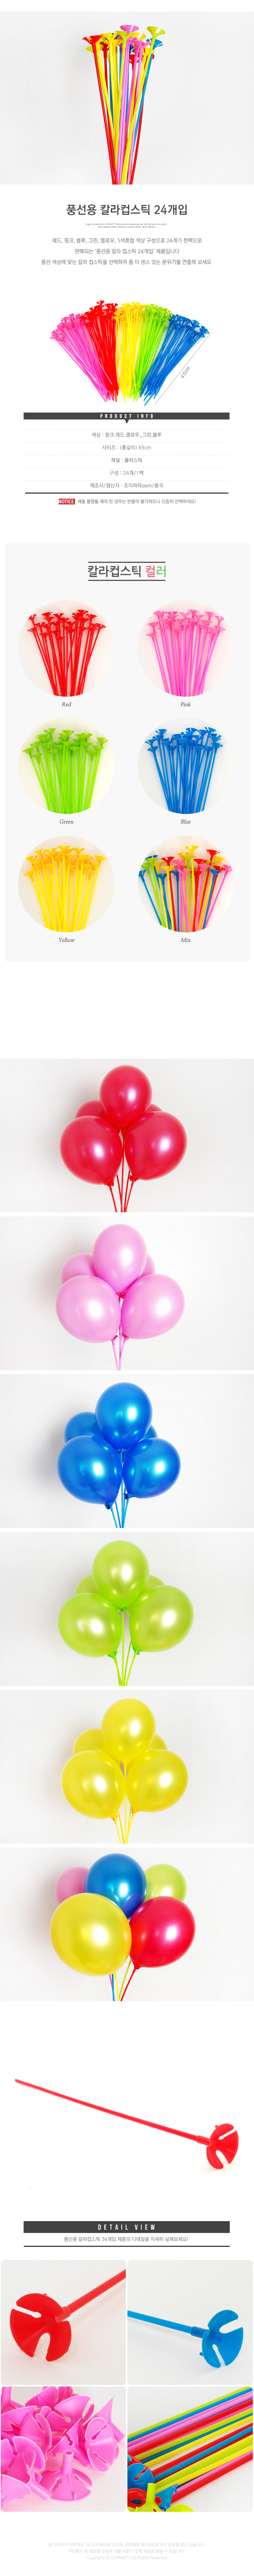 balloonst24p_roll_copy4.jpg